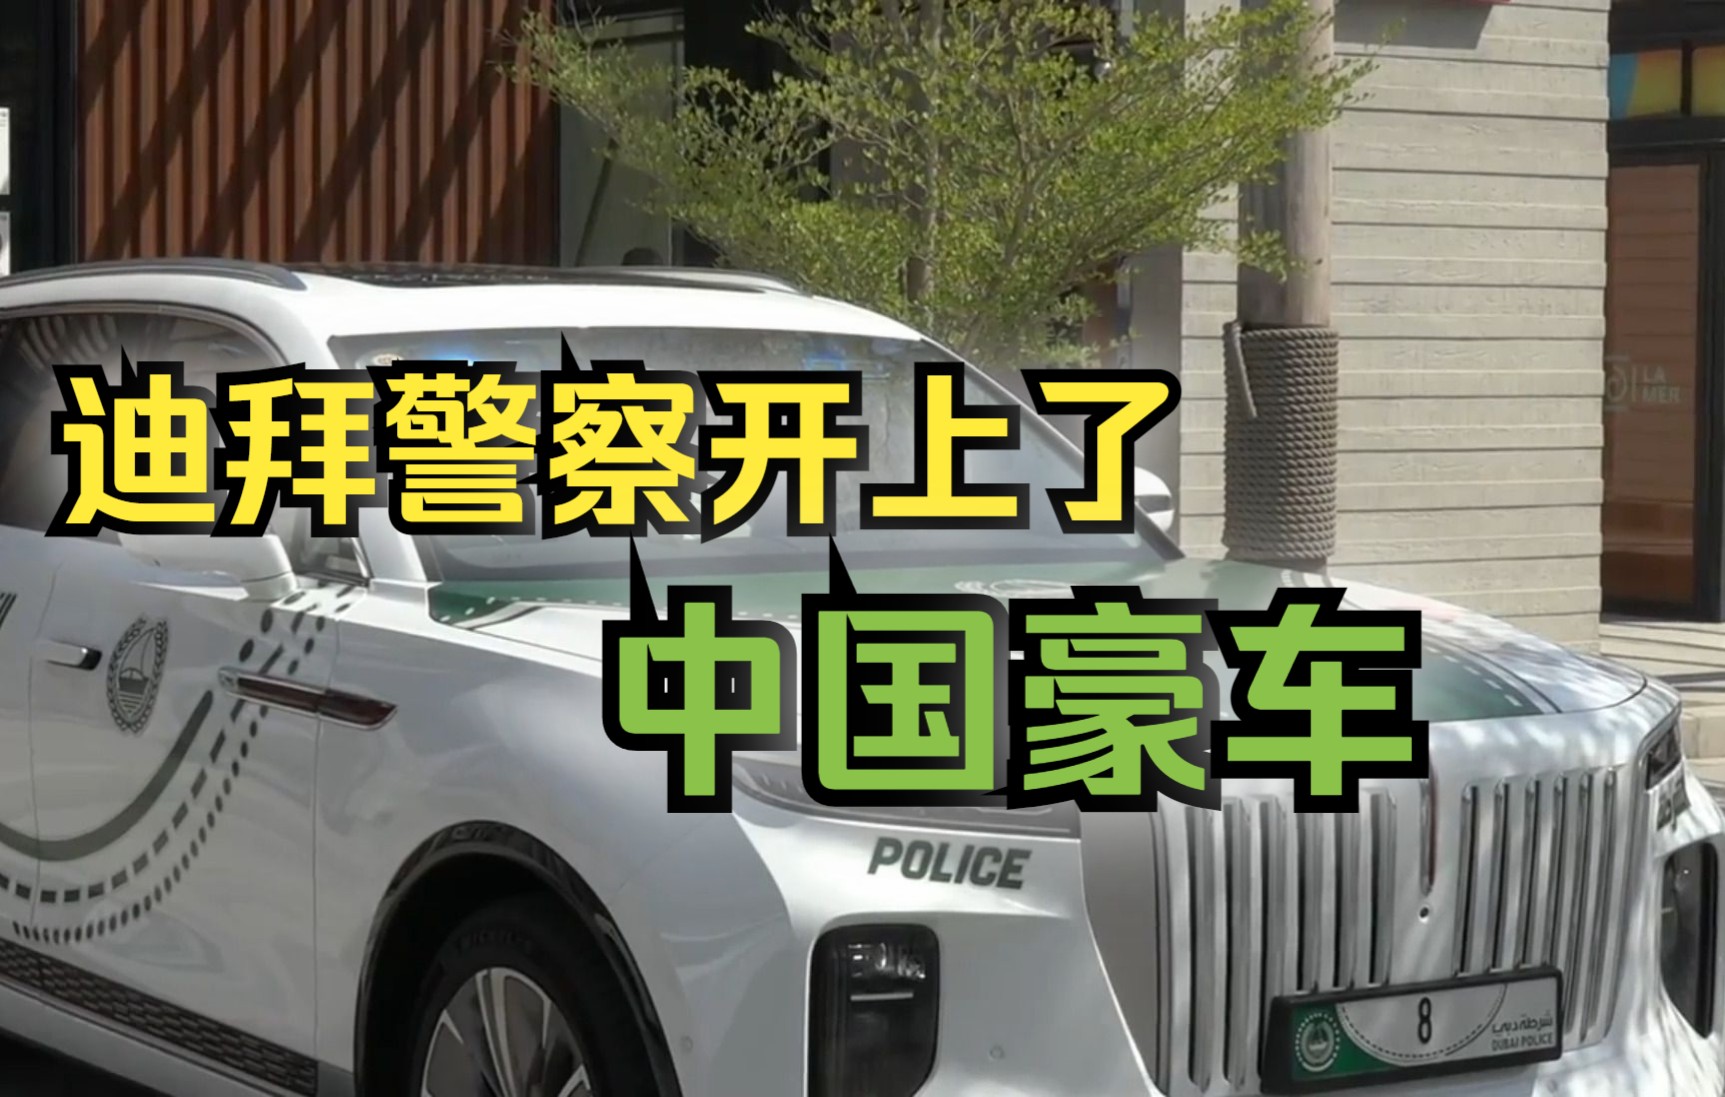 迪拜警方豪华巡逻车队迎来中国豪车